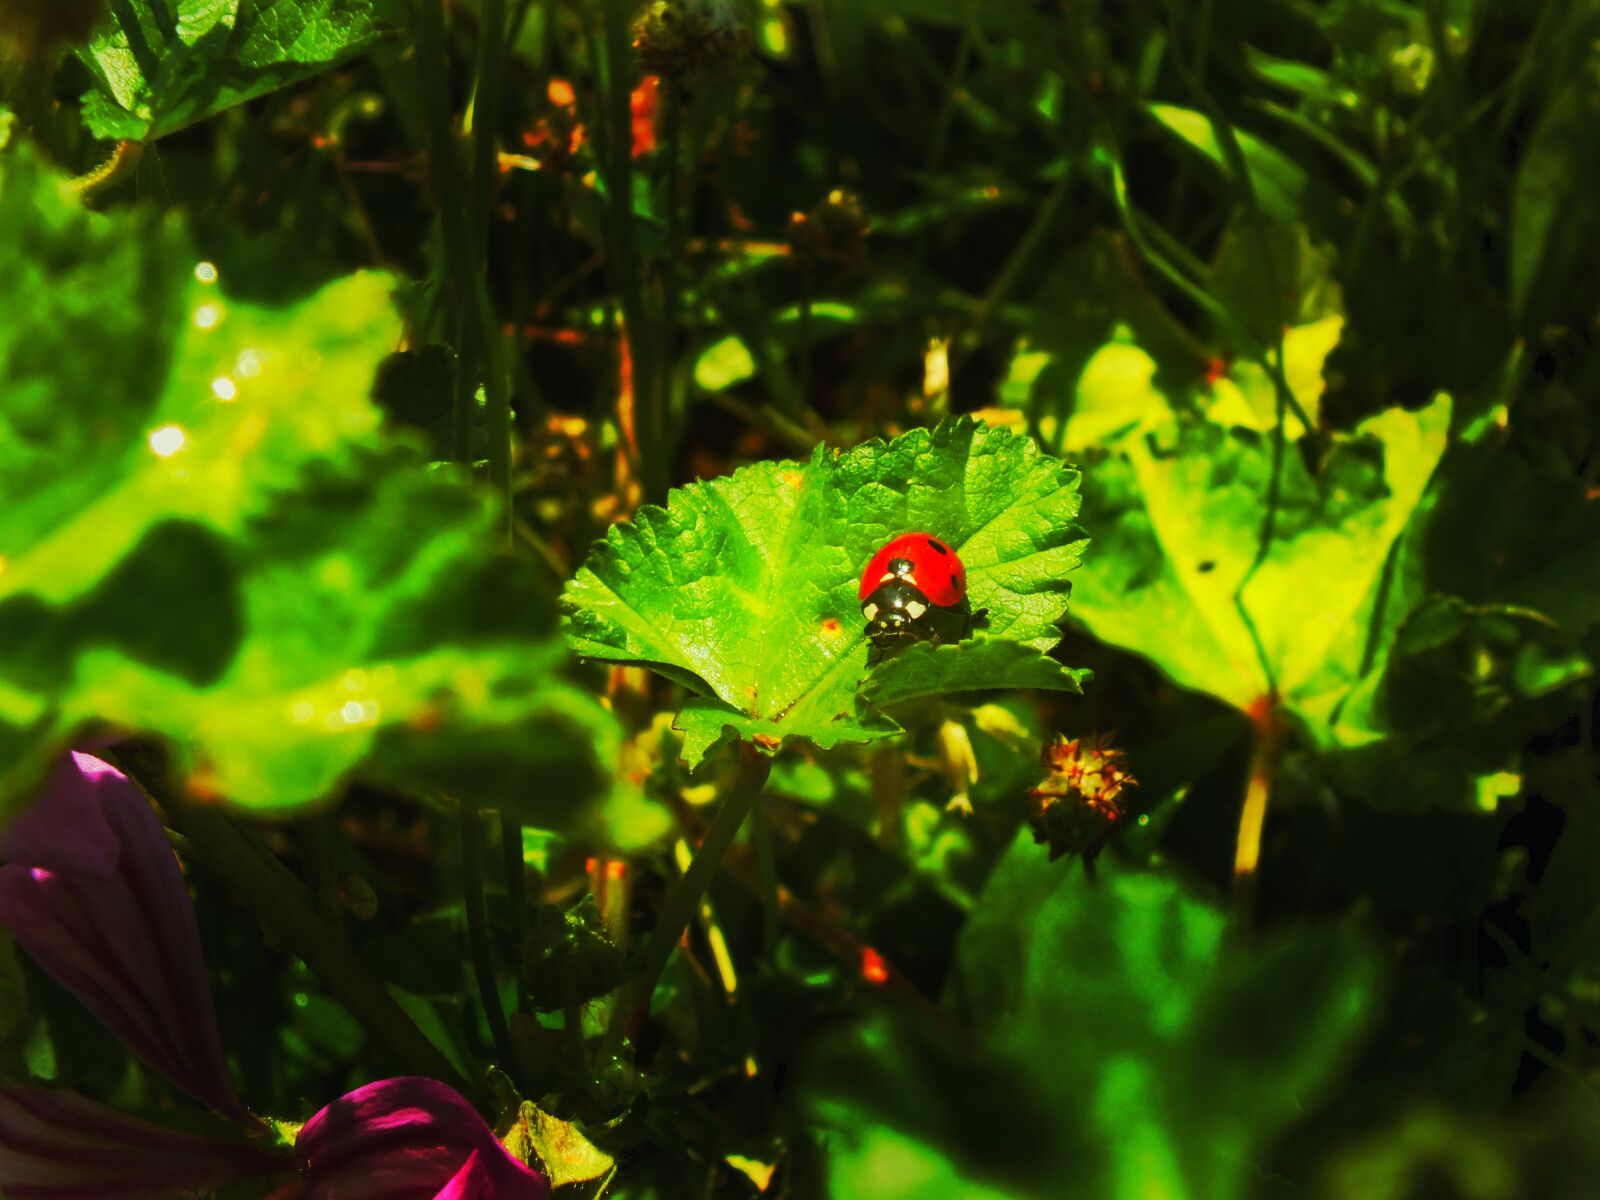 Fujifilm FinePix HS25EXR sample photo. Ladybug, yesil leaf, insect photography